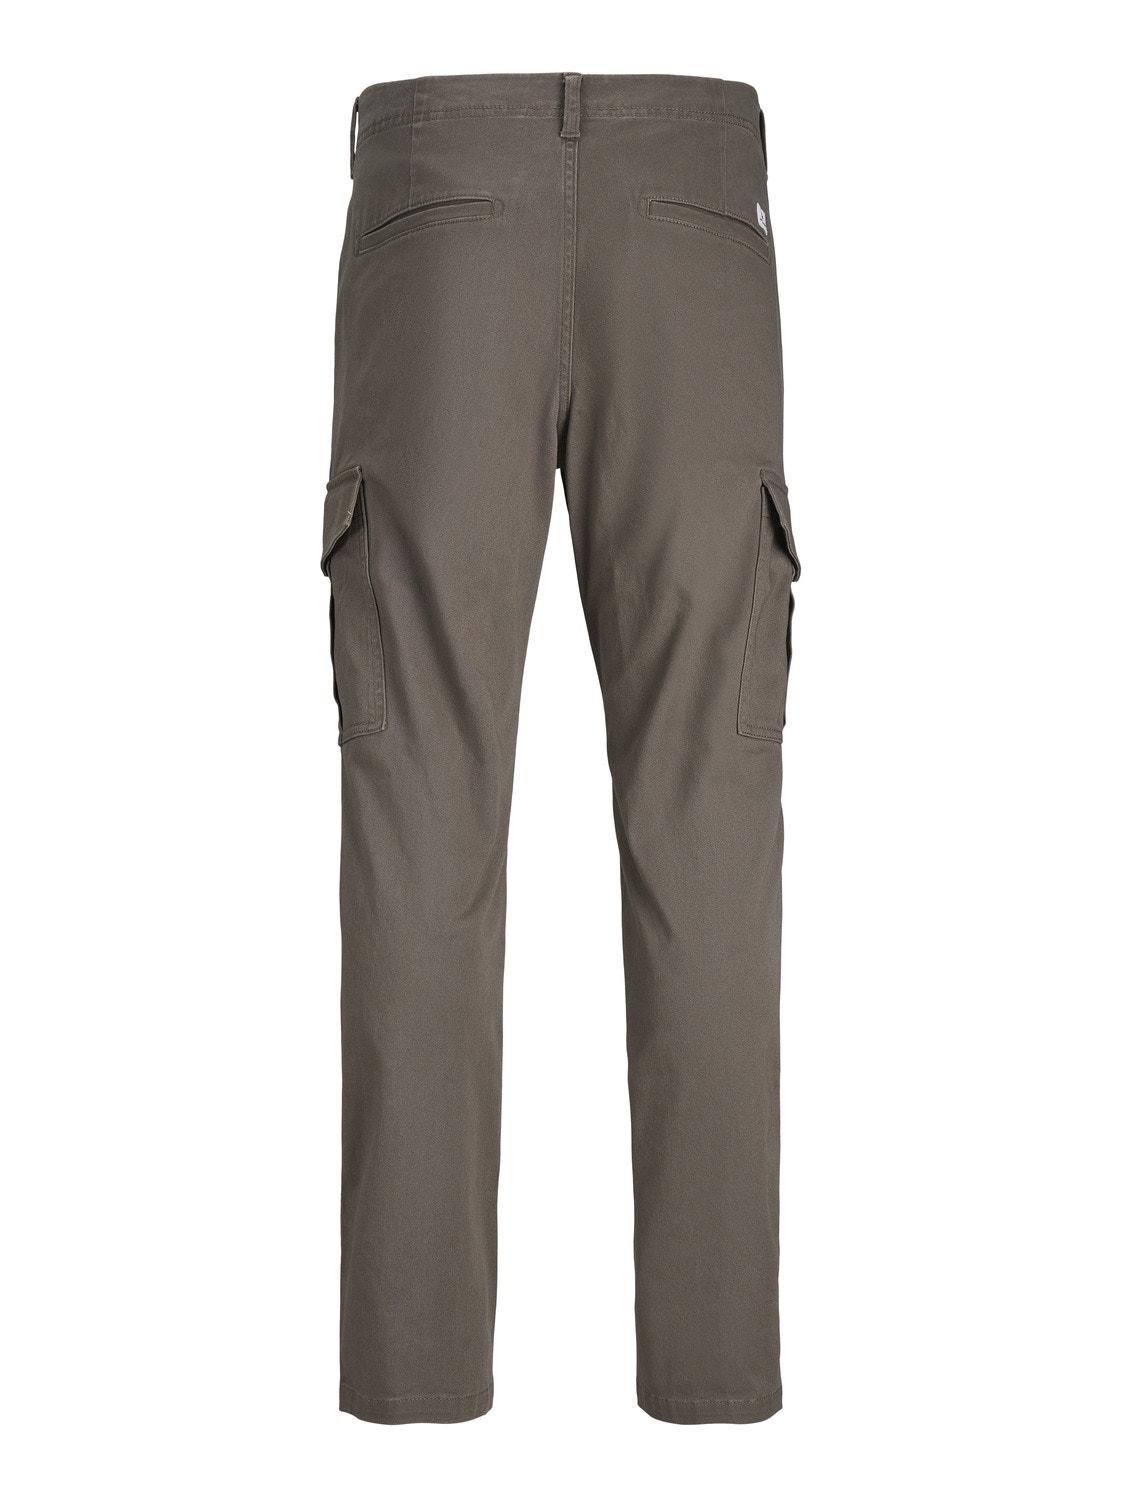 Jack & Jones Slim Fit Cargo trousers -Bungee Cord - 12182538